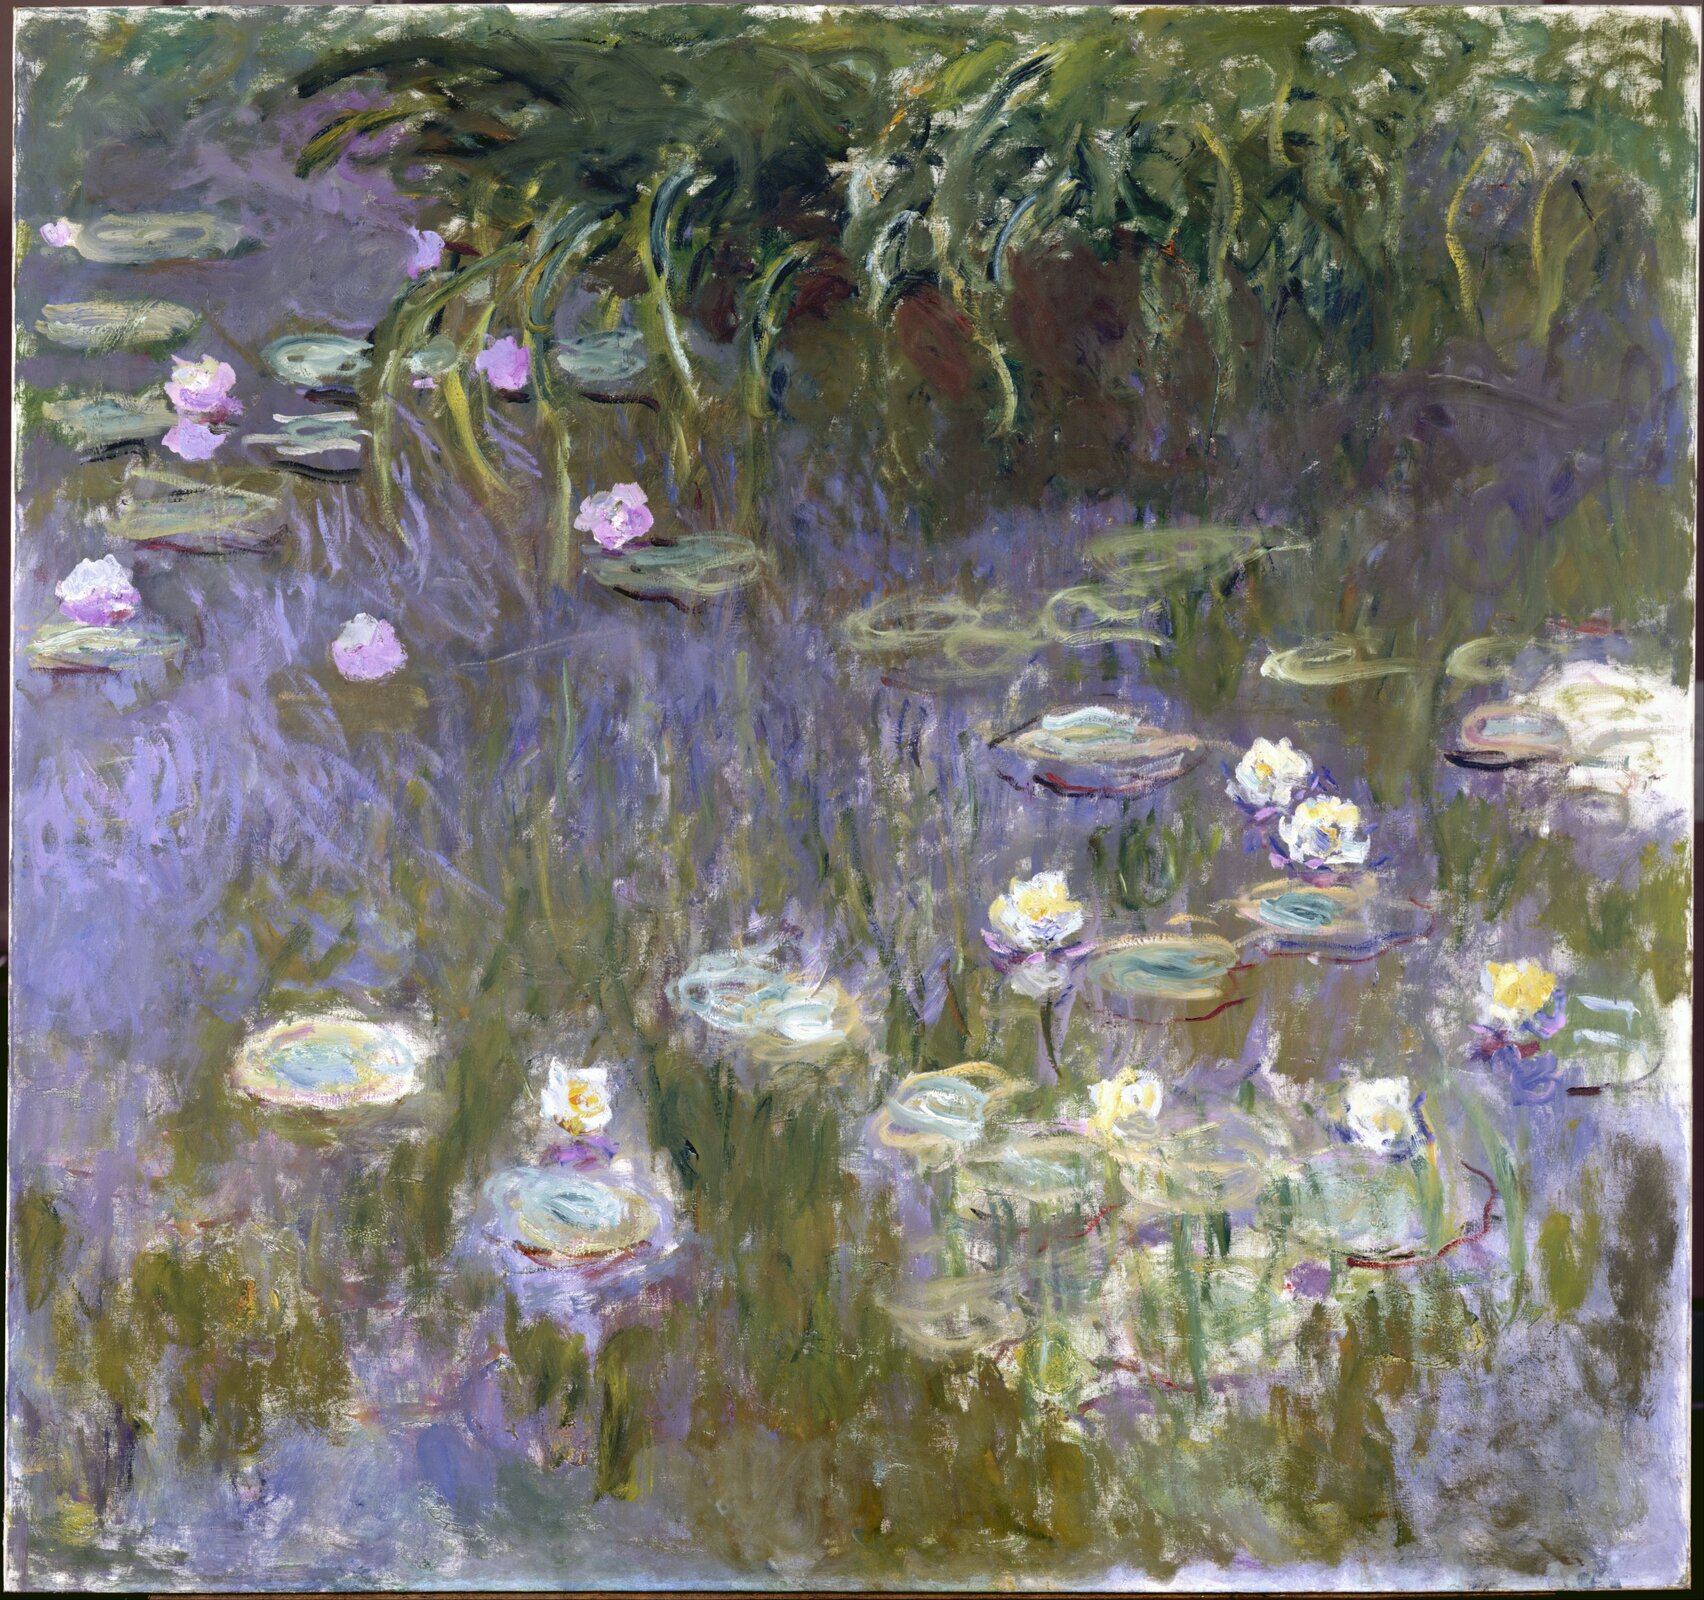 Ilustracja o kształcie poziomego prostokąta przedstawia obraz  Claude’a Moneta „Lilie wodne”. Ukazuje taflę wody, wypełnioną liśćmi i kwiatami liii wodnych oraz innymi roślinami wodnymi w górnej części obrazu. Woda namalowana jest w fioletowej barwie. NA niej delikatnymi muśnięciami pędzla oddane zostały liście  i  swobodnie pływające, białe lilie.